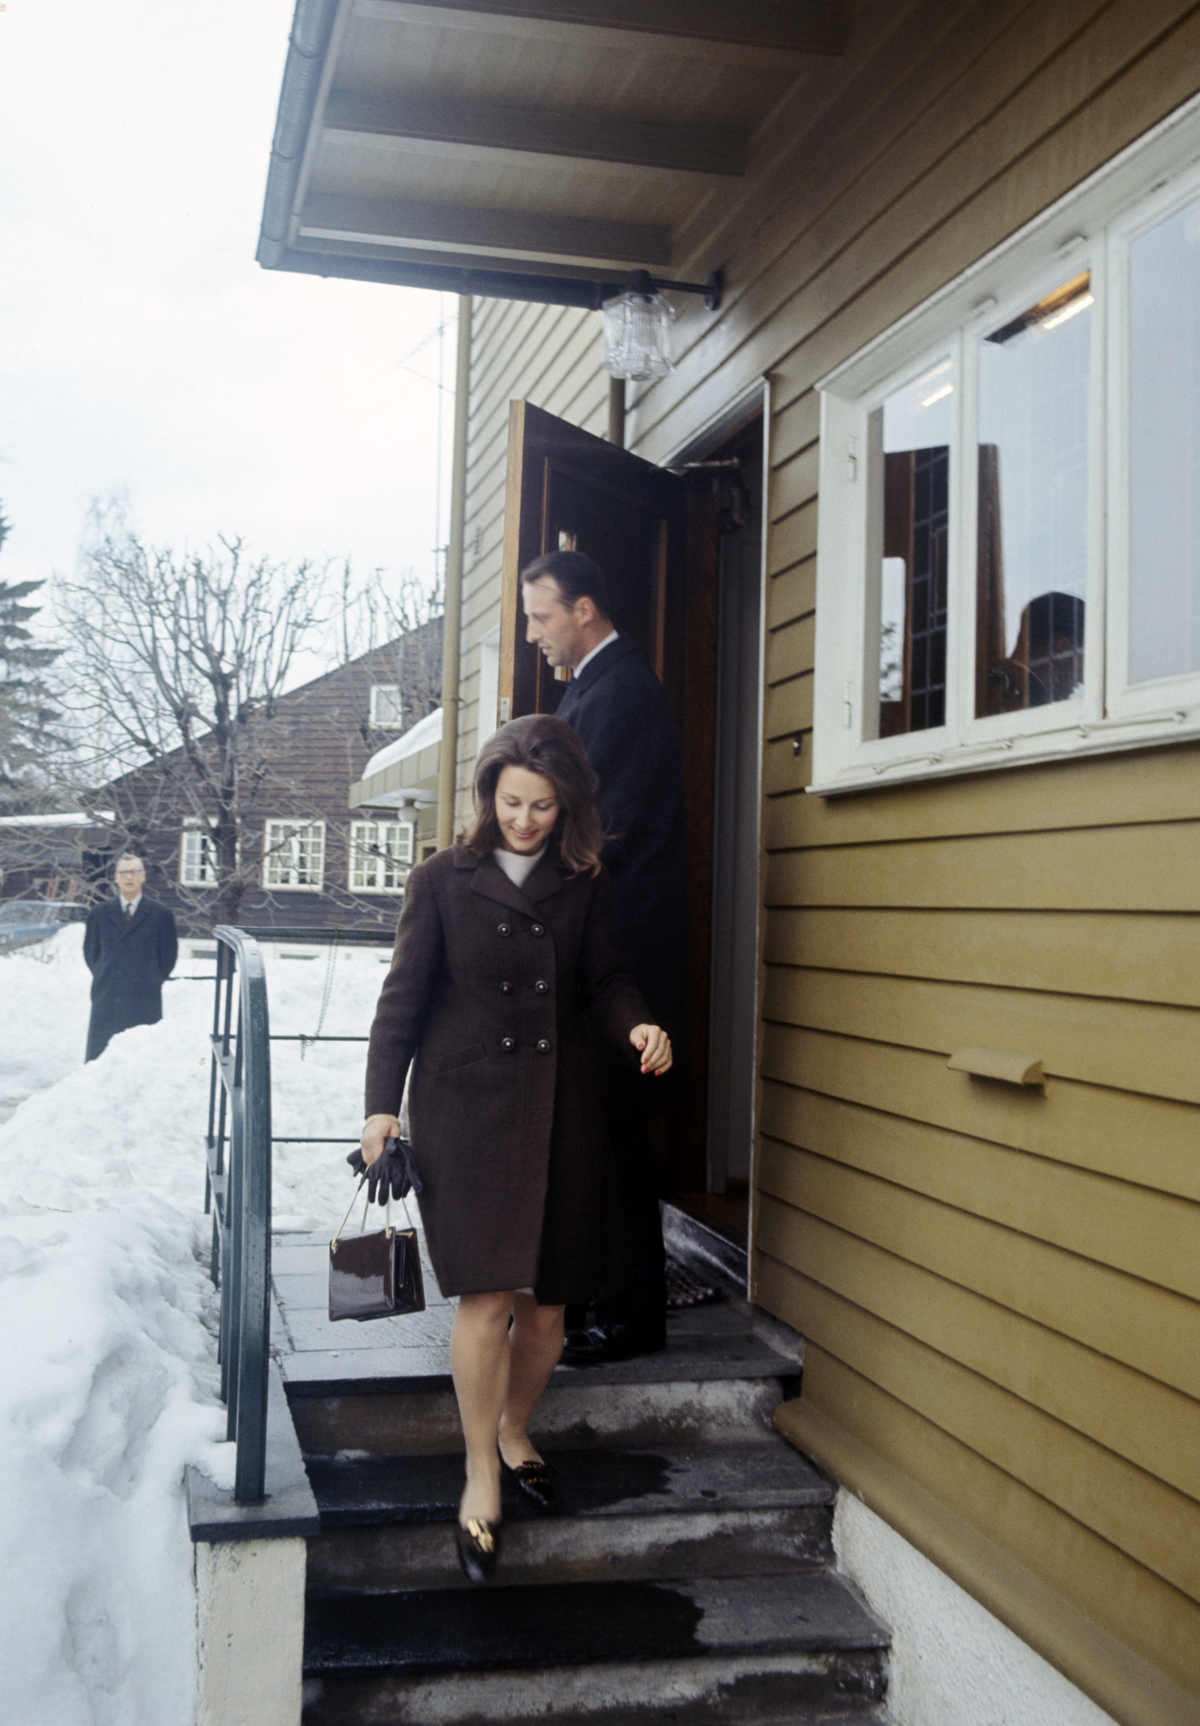 Kronprins Harald og Sonja Haraldsen på trapp utenfor hus.